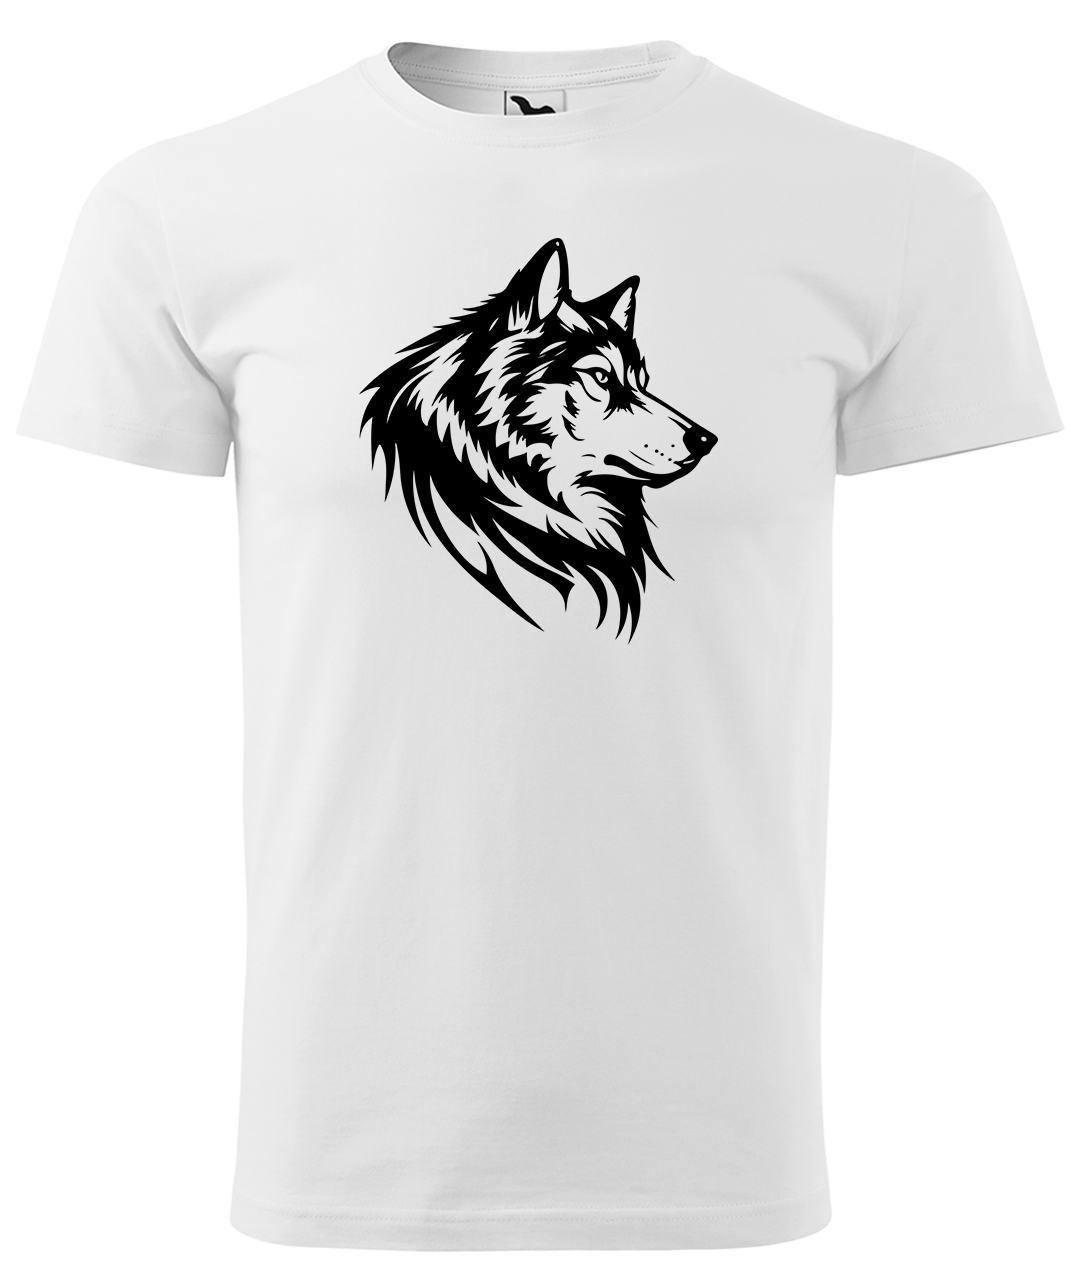 Dětské tričko s vlkem - Wolf Velikost: 4 roky / 110 cm, Barva: Bílá (00), Délka rukávu: Krátký rukáv